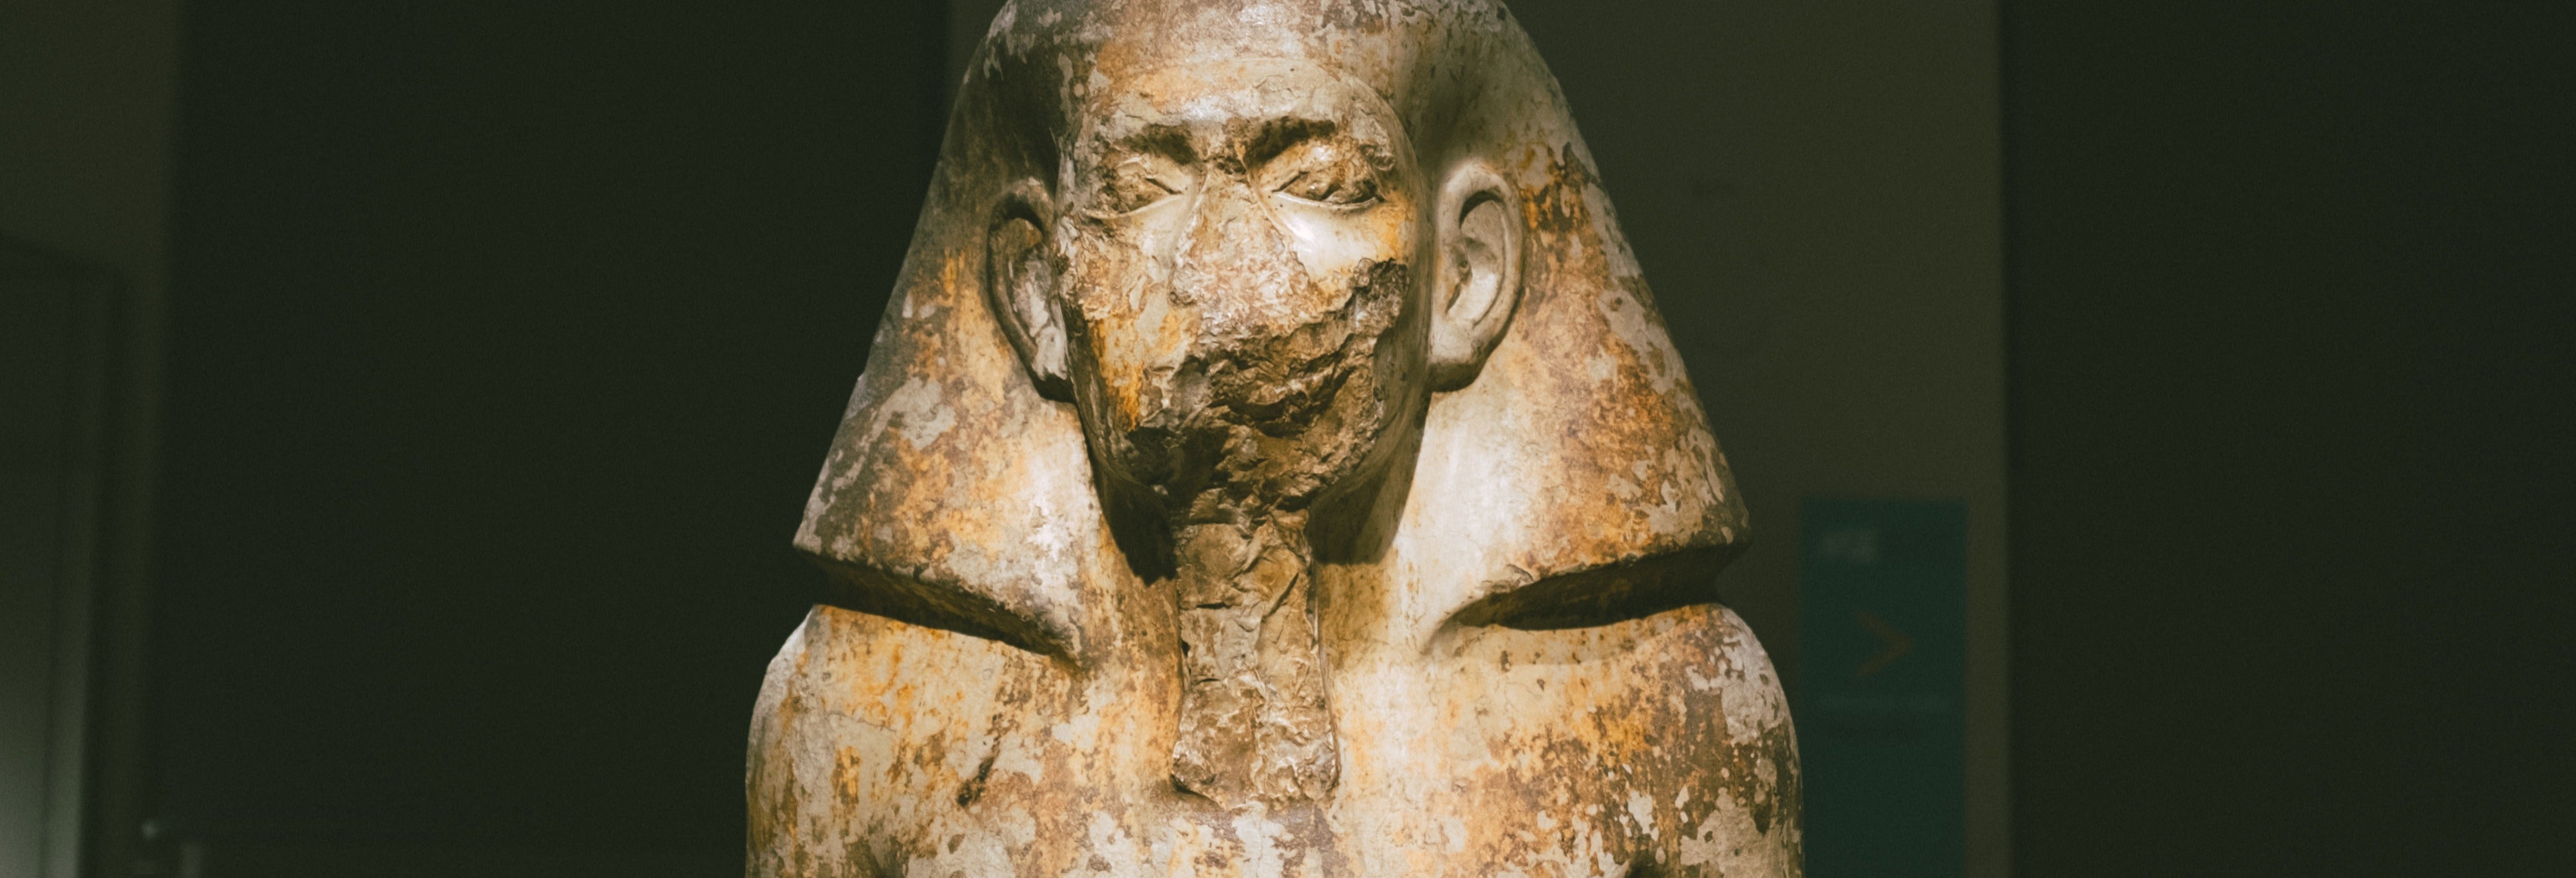 Visita guiada pelo Museu Egípcio